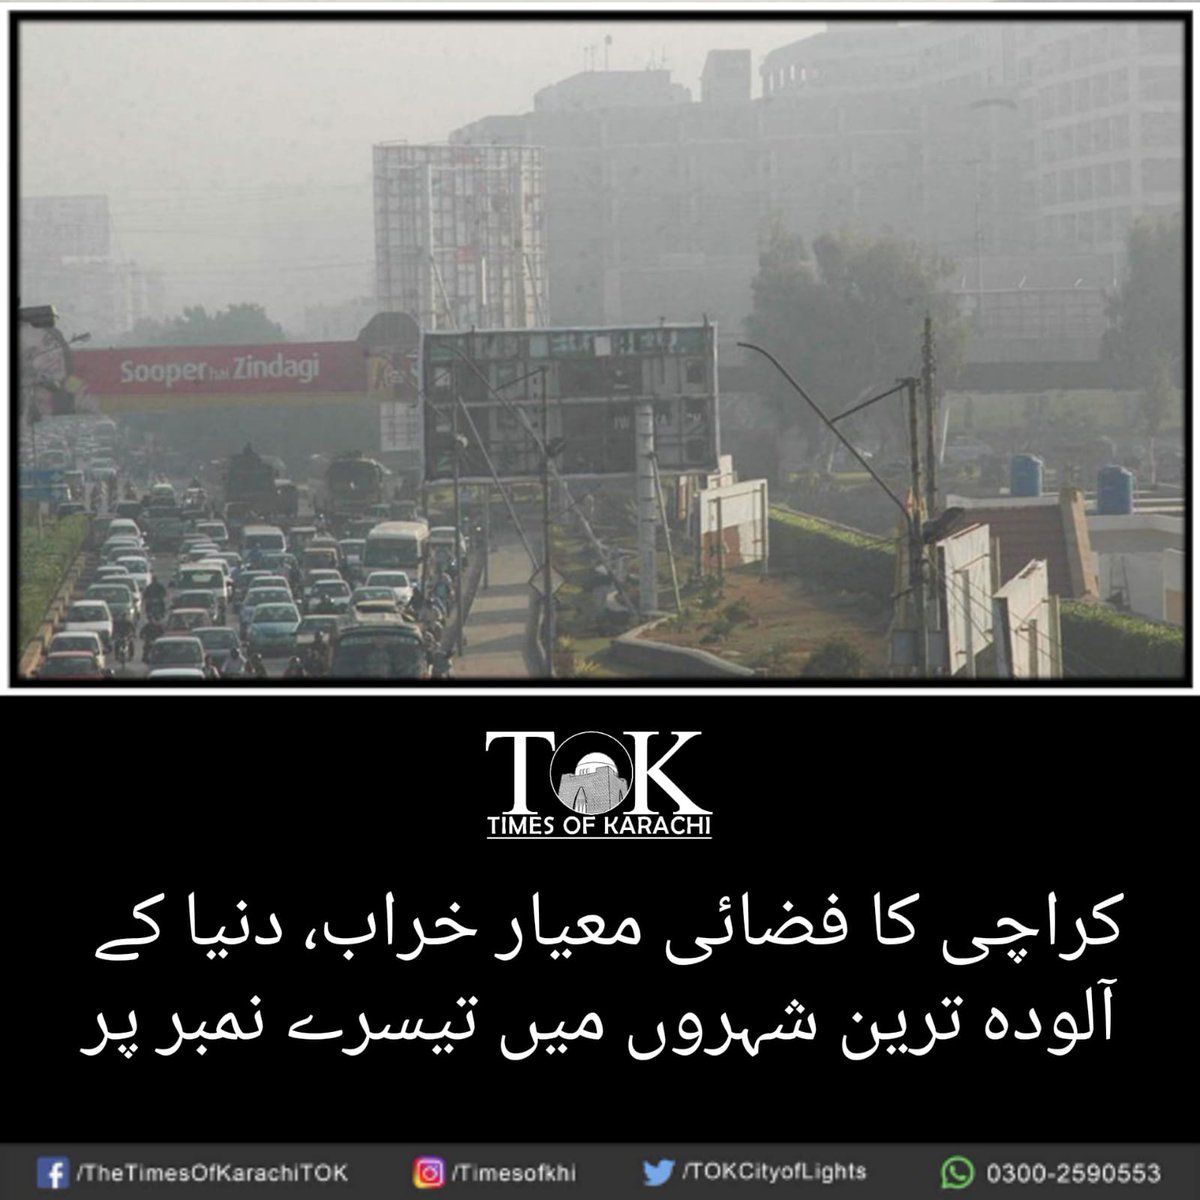 کراچی میں آج بھی فضائی معیار خراب ہے۔ شہرقائد دنیا کے آلودہ ترین شہروں کی فہرست میں تیسرے نمبر پر ہے۔ #TOKAlert #Karachi #AirQualityIndex #AirPollution تفصیلات، bit.ly/3SliclX